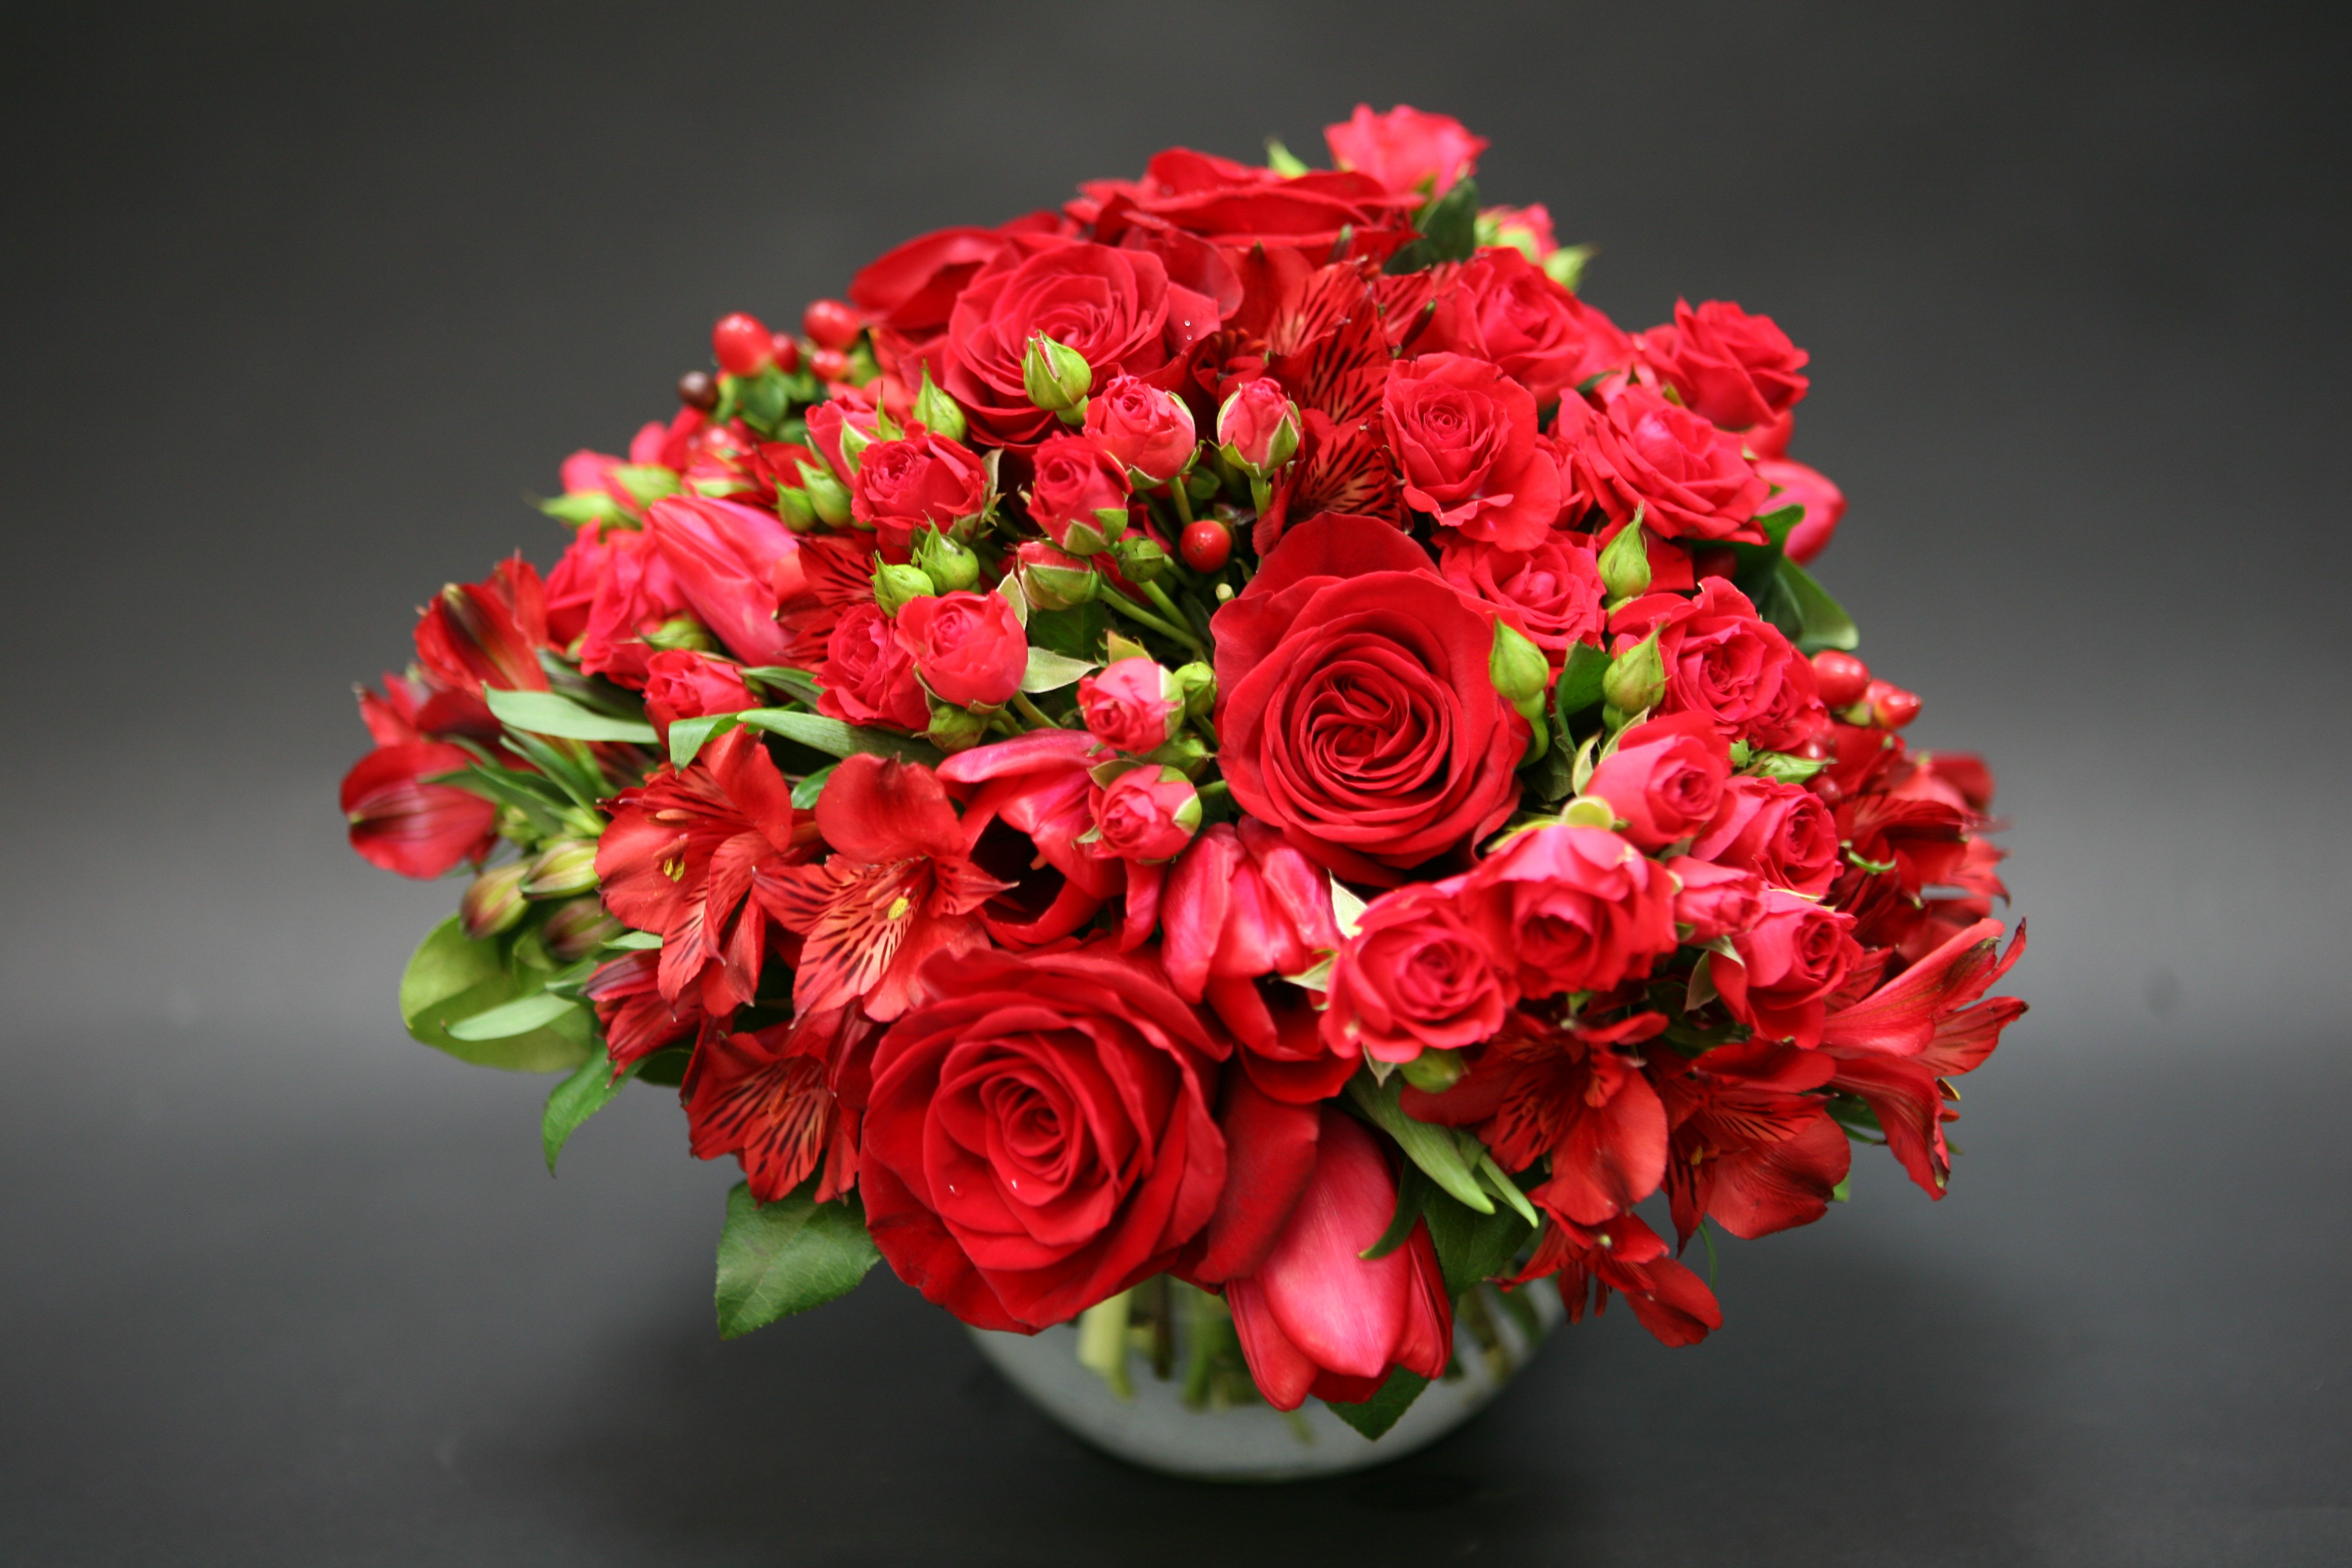 Red Roses, Tulips & Alstroemeria